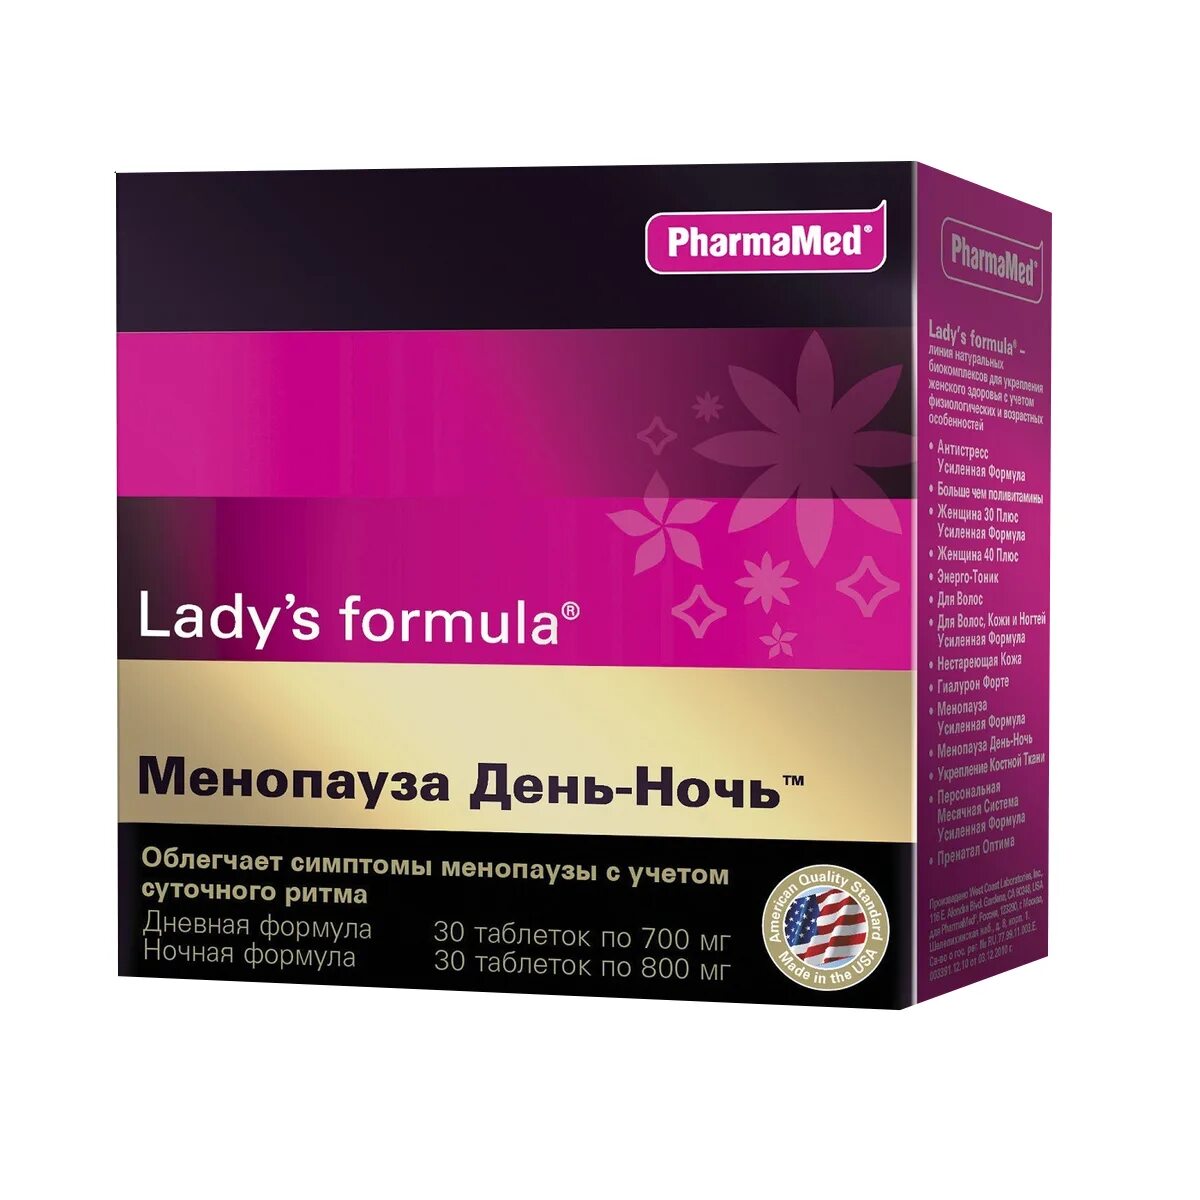 15 40 плюс час. Ледисформулапременопауз. Lady's Formula (ледис формула). Lady`s Formula менопауза. Леди формула витамины для женщин менопаузе.